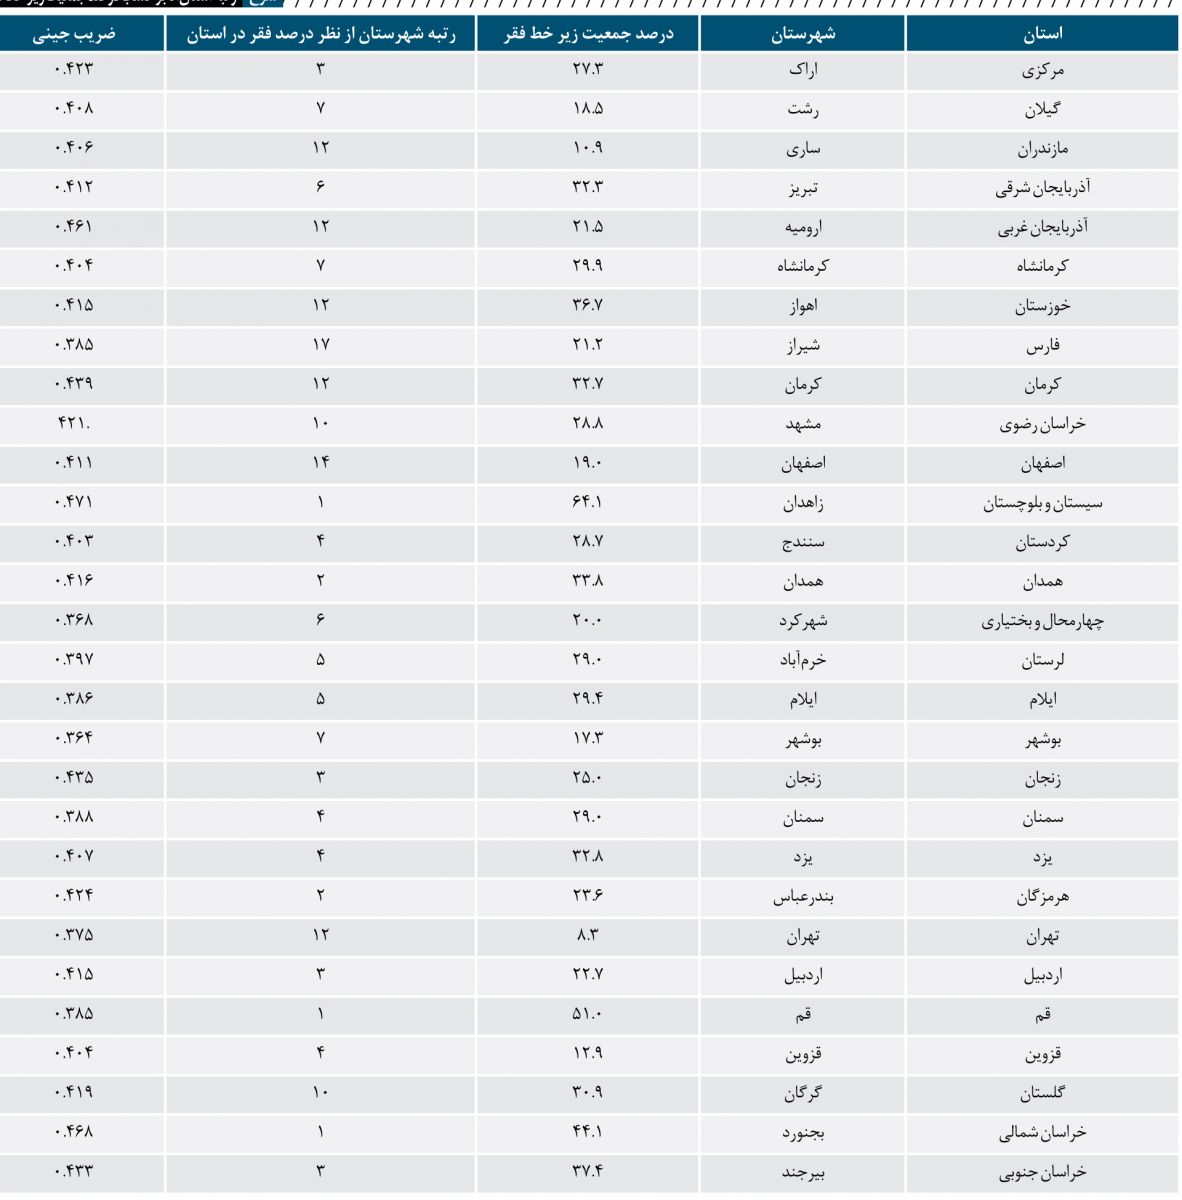 کالبدشکافی نقشه فقر در ایران/ جدول رتبه استان ها برحسب درصد جمعیت زیر فقر